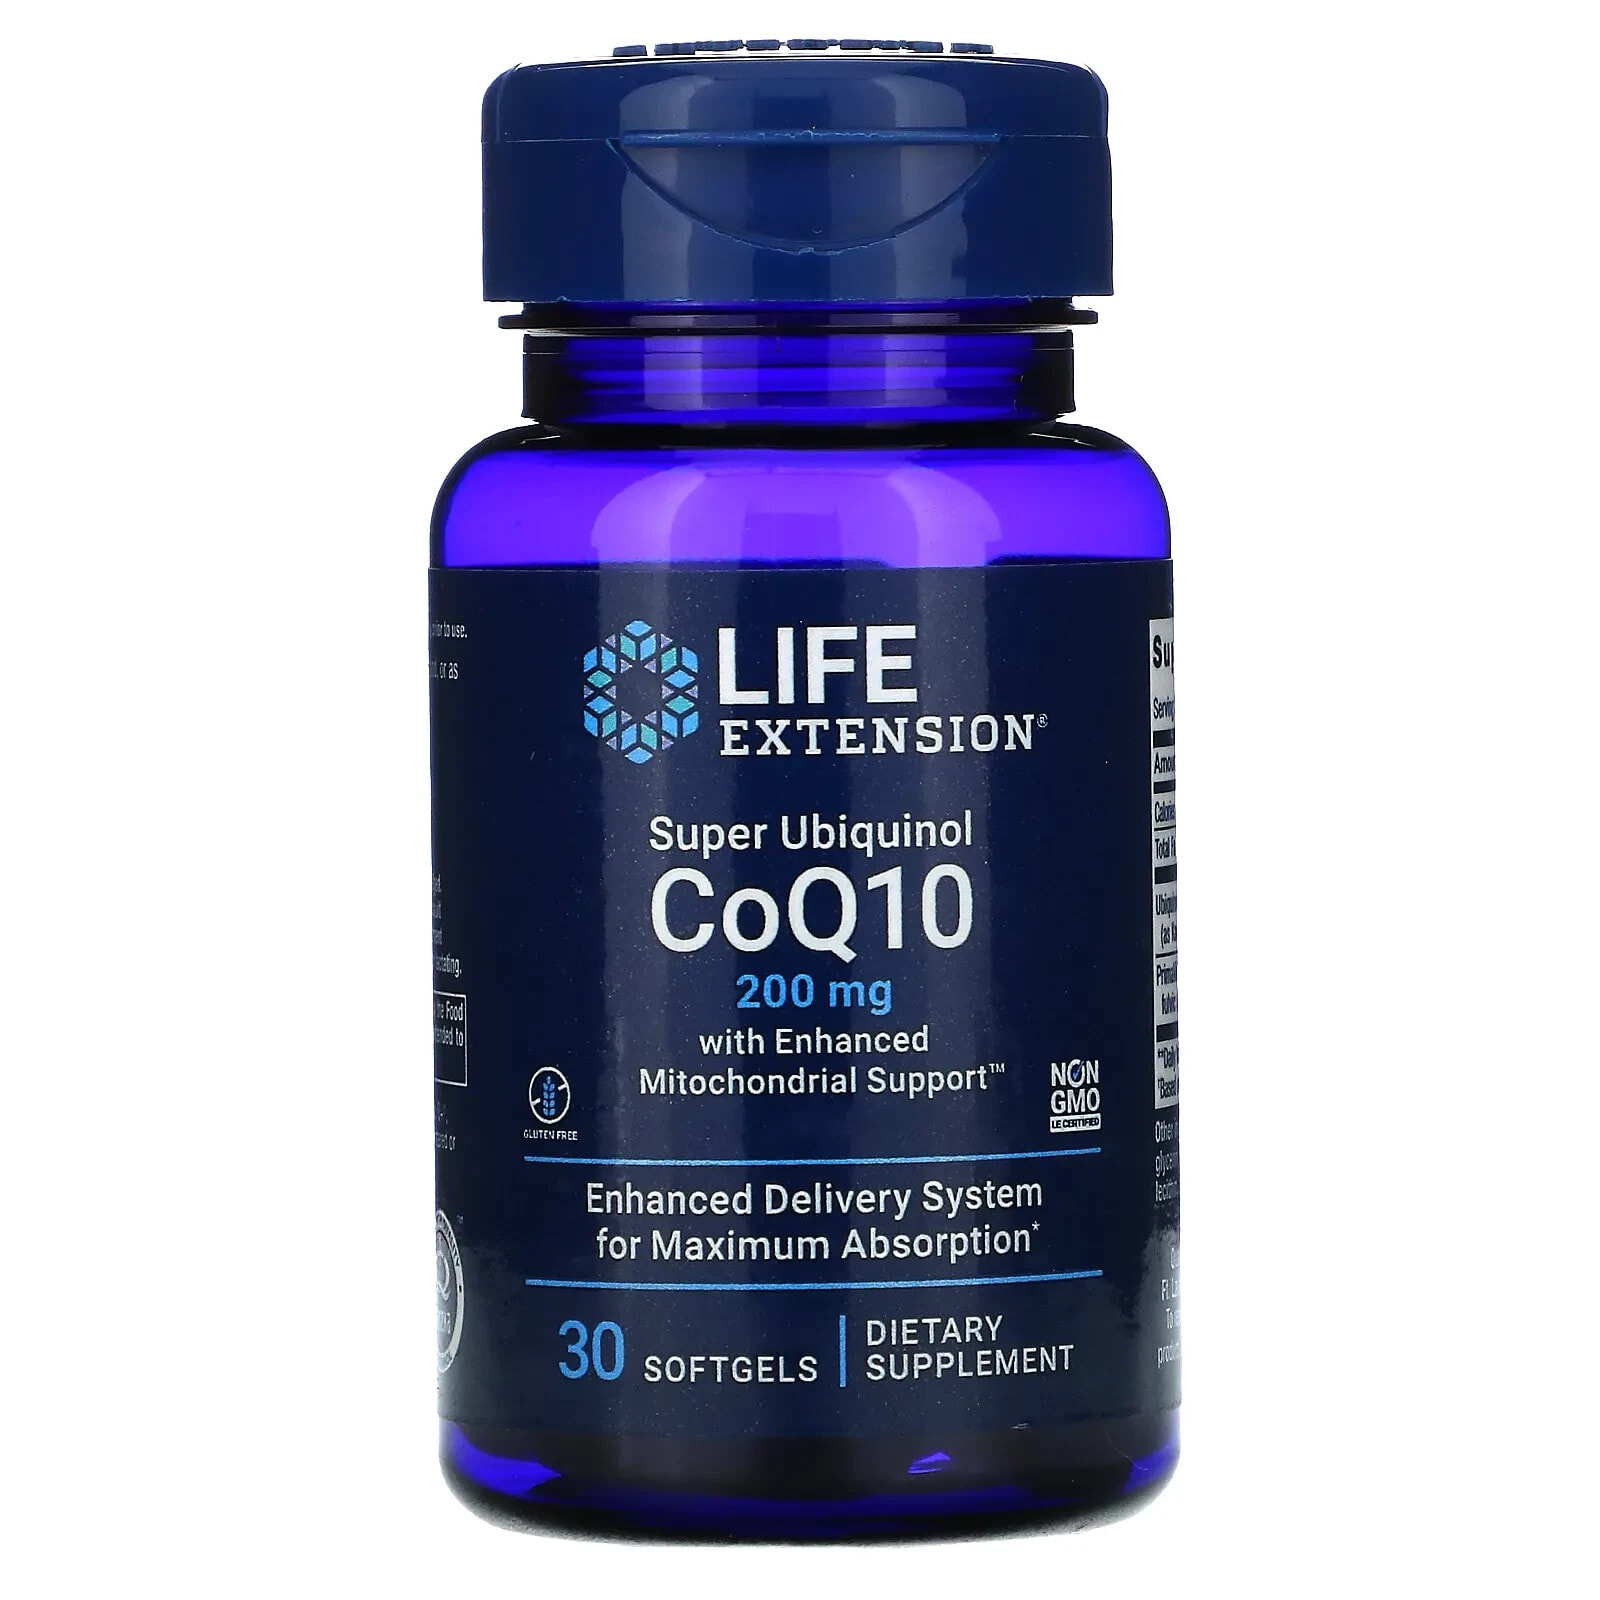 Лайф Экстэншн, Super Ubiquinol CoQ10 с улучшенной поддержкой митохондрий, 200 мг, 30 гелевых капсул